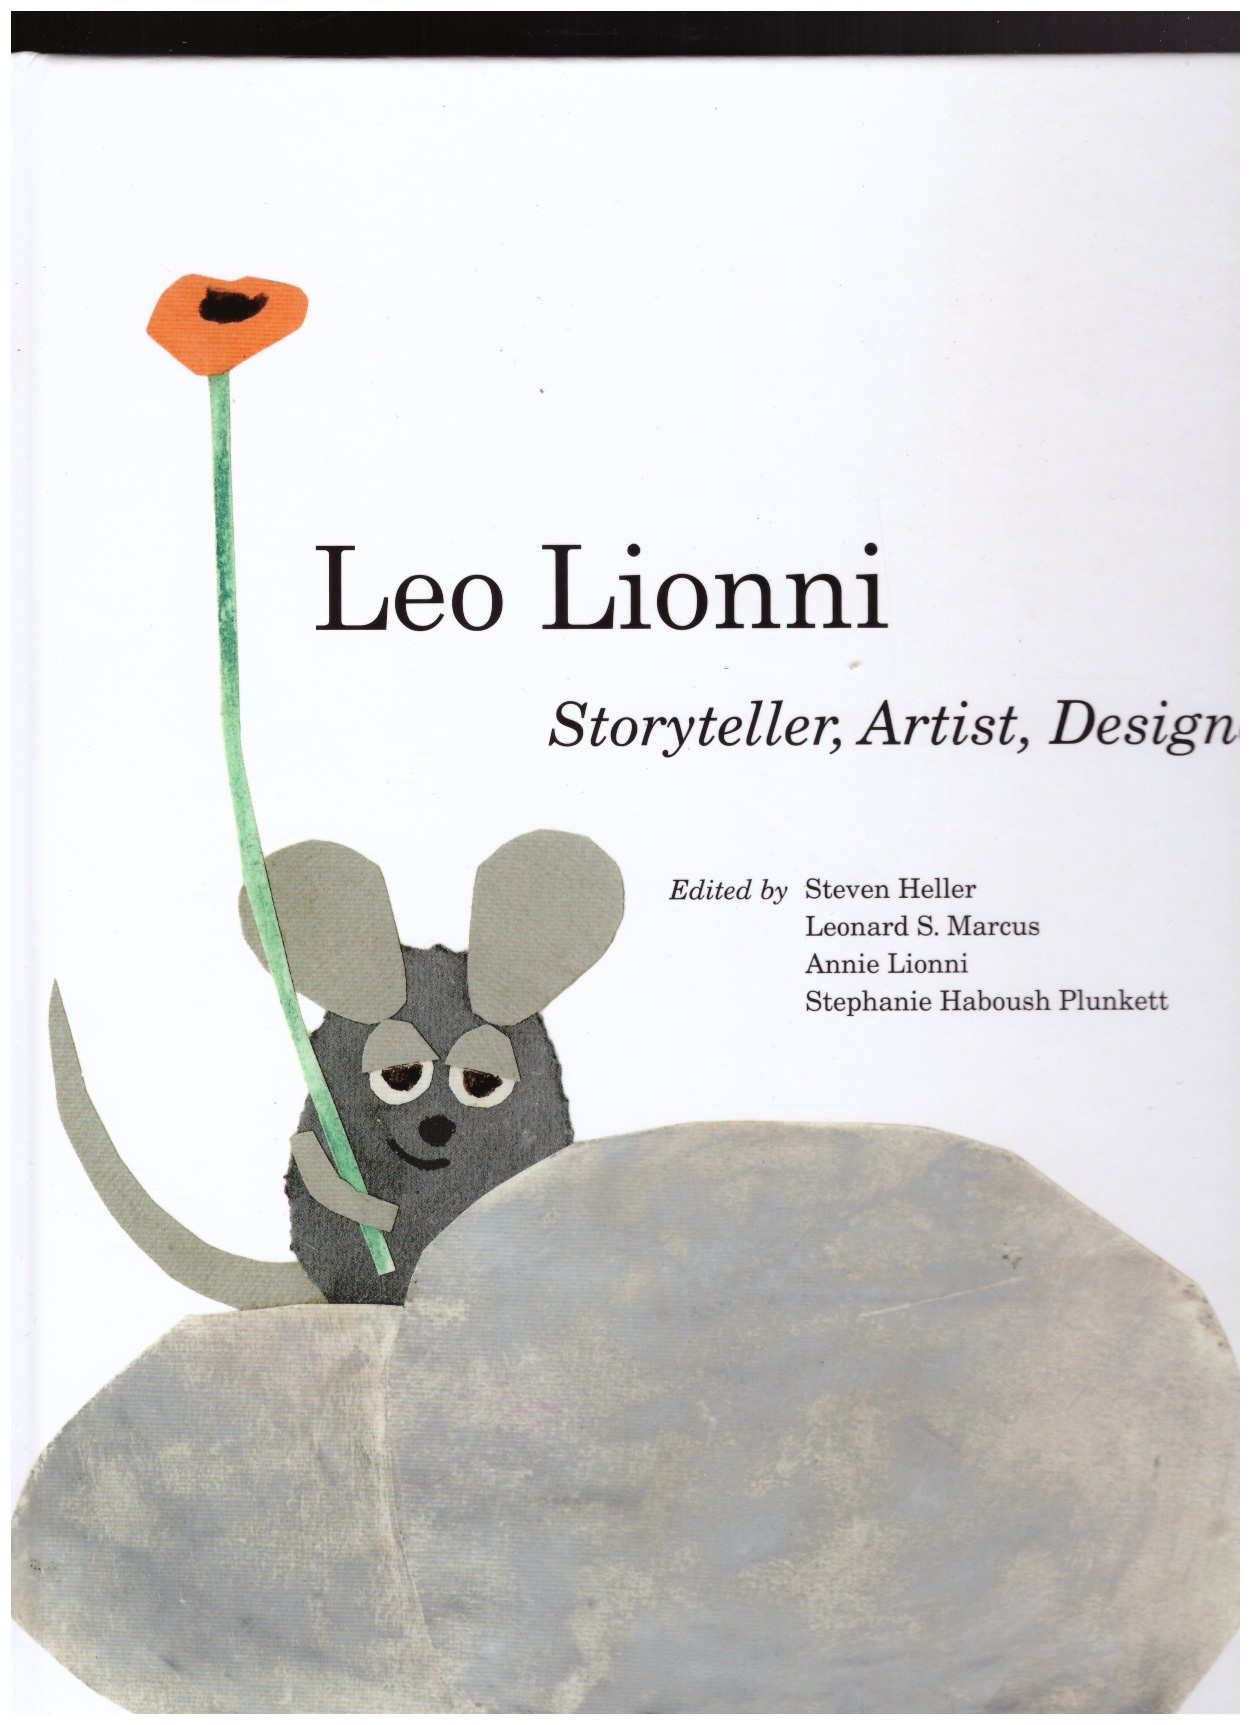 HELLER, Steven; MARCUS, Leonard S.; LIONNI, Annie; HABOUSH PLUNKETT, Stephanie (eds.) - Leo Lionni: Storyteller, Artist, Designer